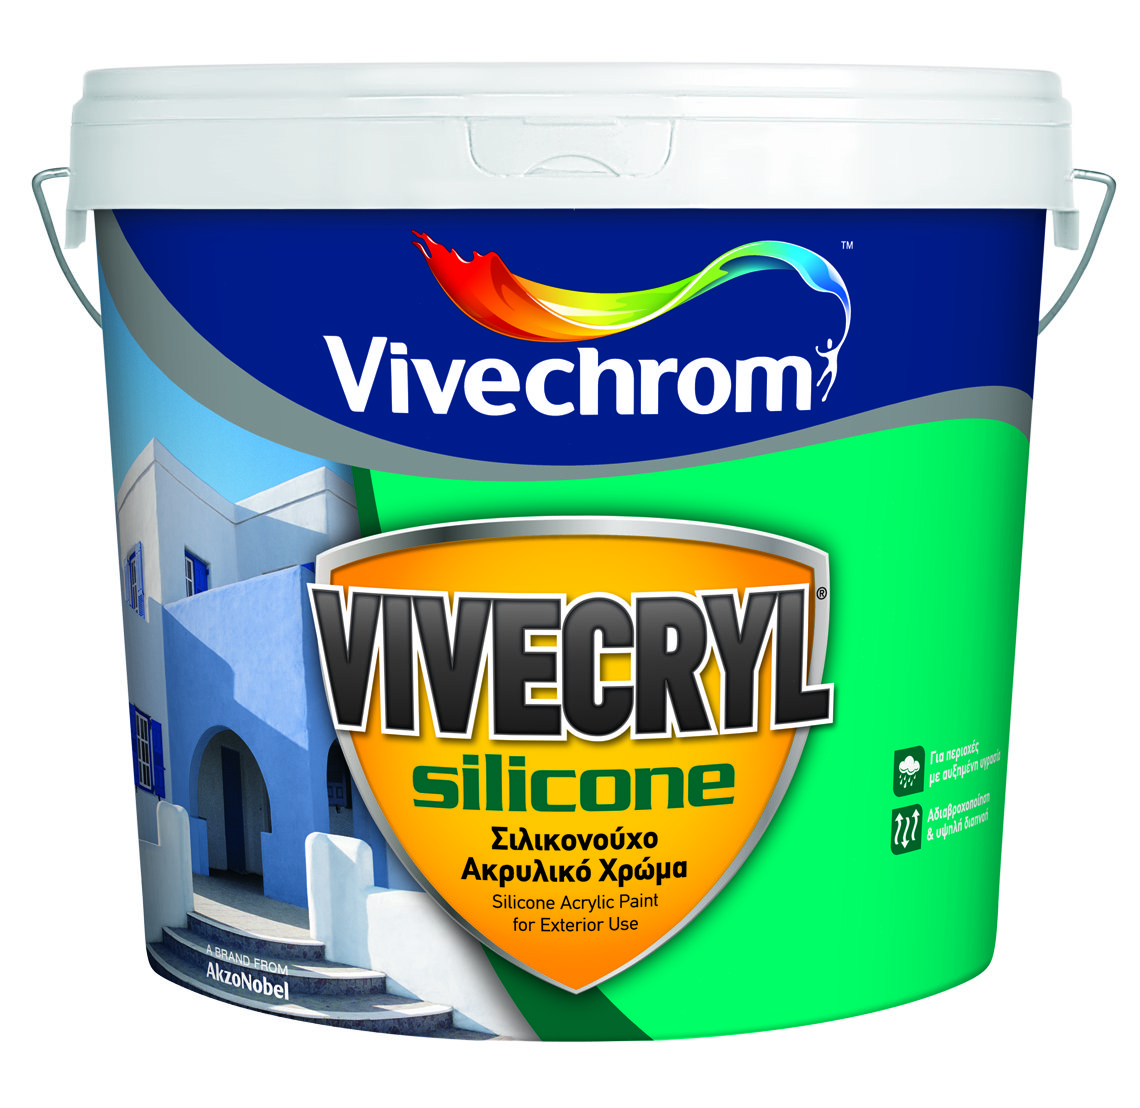 Vivechrom Vivecryl Silicone Matt Finish White 10L